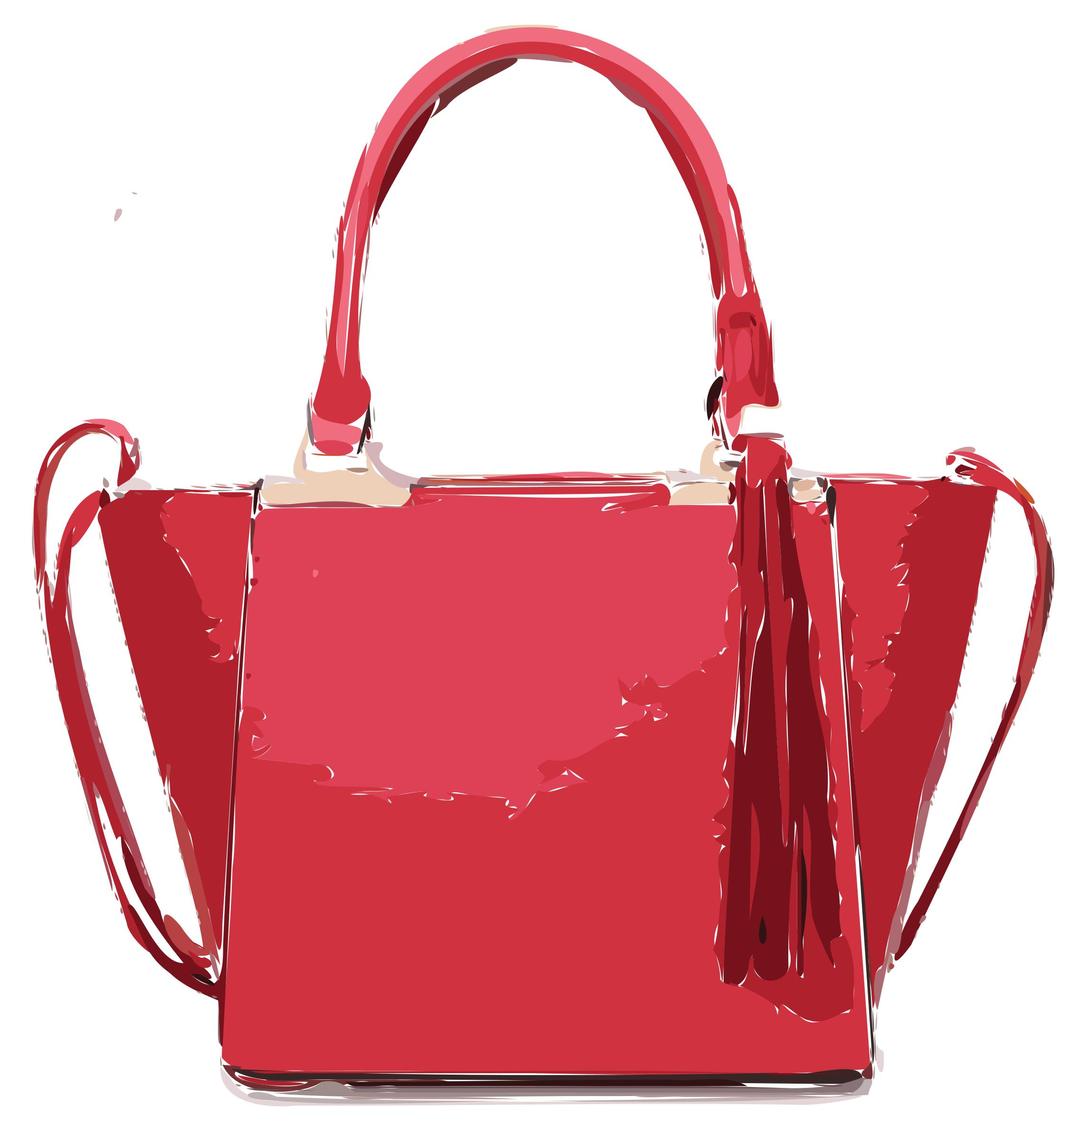 Pink Bag with Tassles png transparent